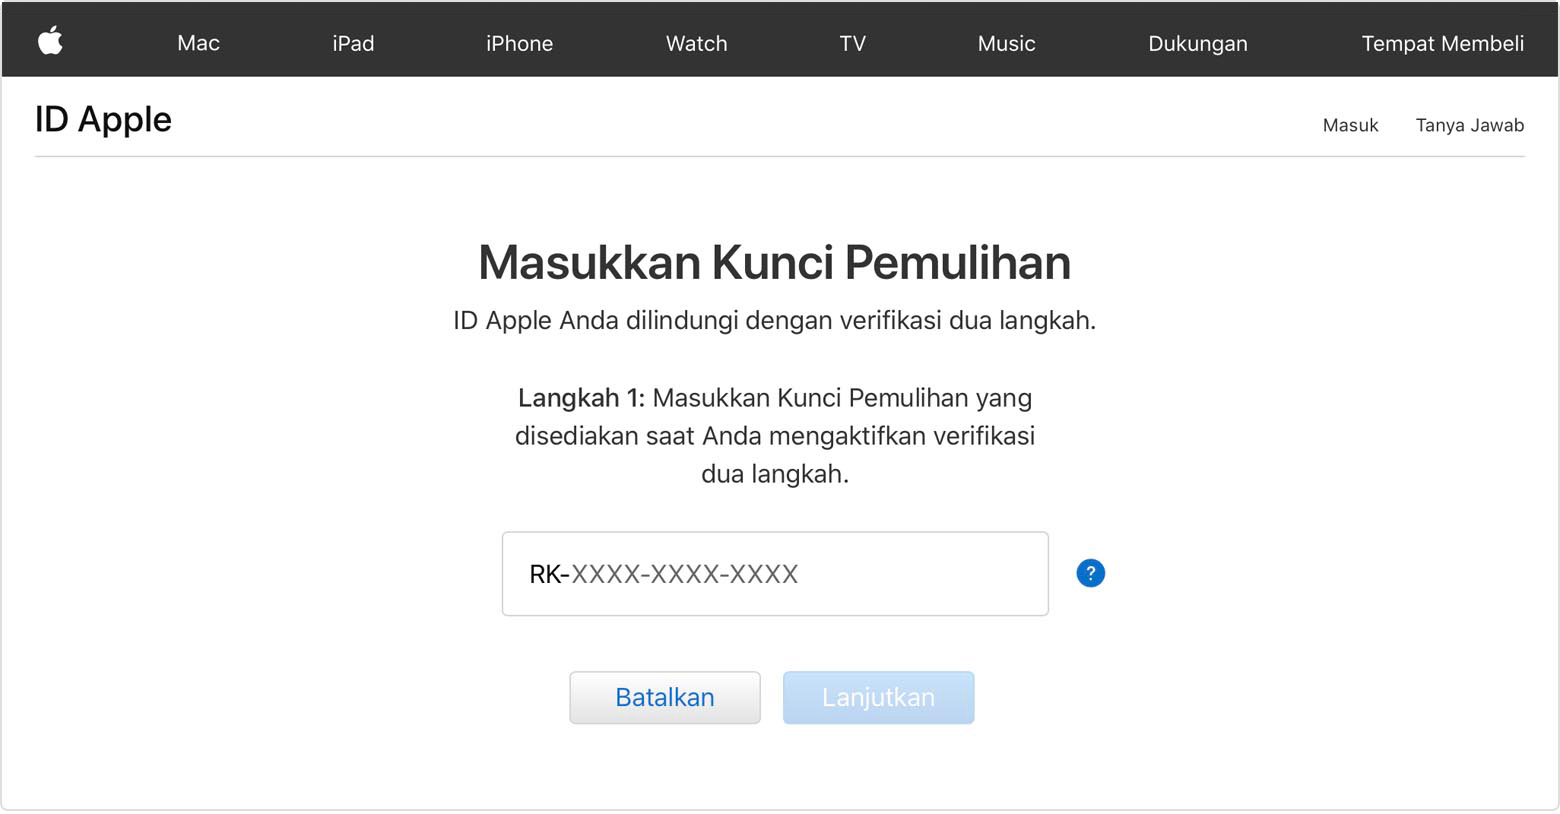 Layar ID Apple menampilkan Masukkan Kunci Pemulihan